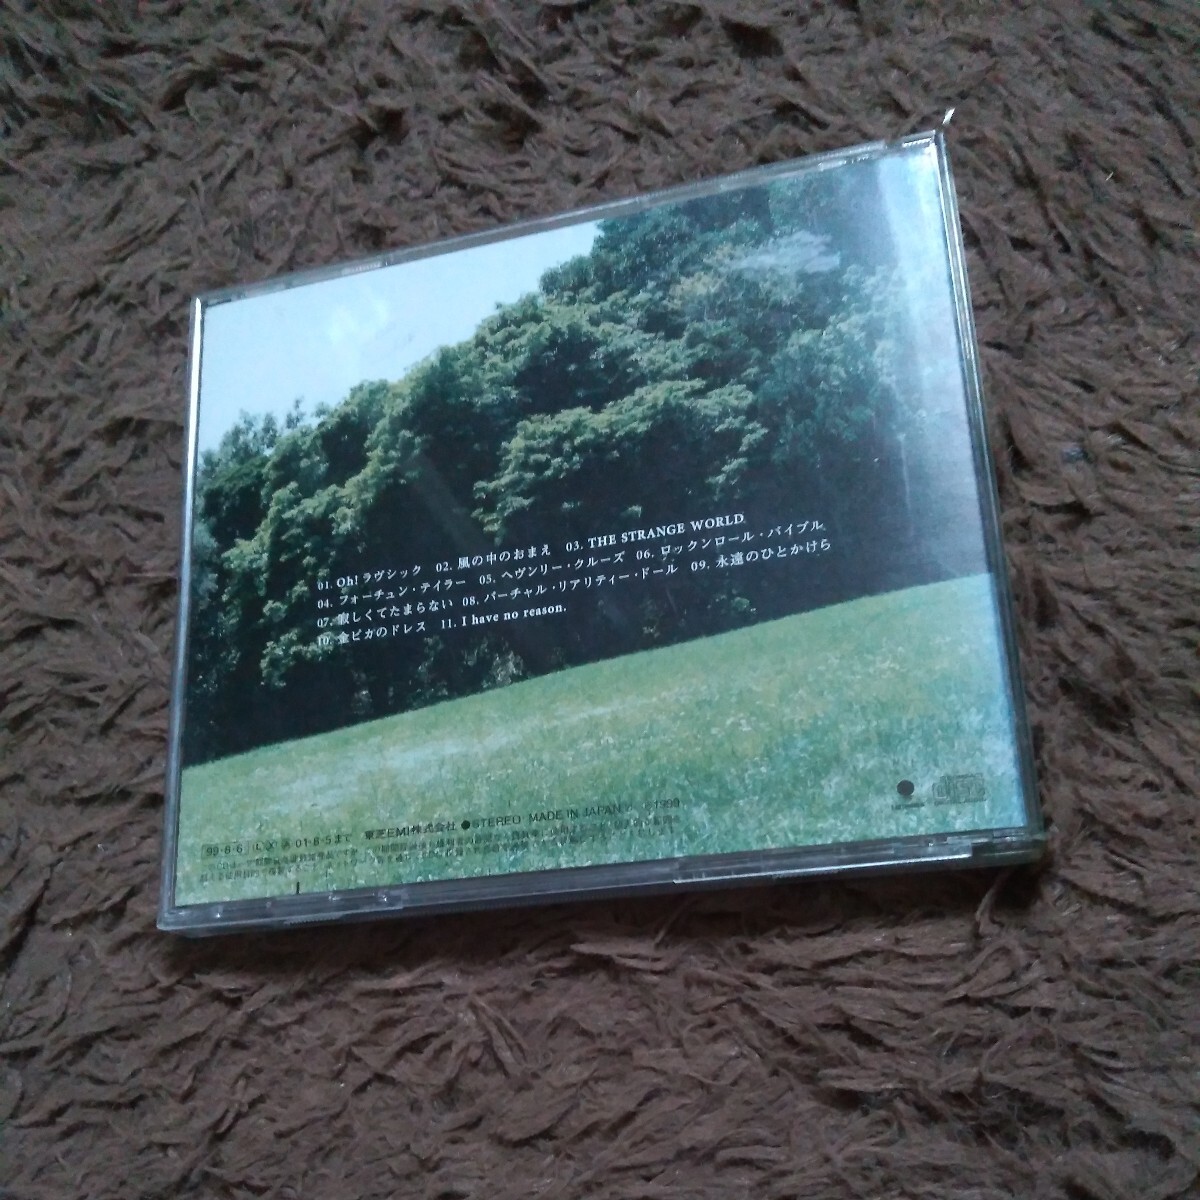 CD アルバム 矢沢永吉 / LOTTA GOOD TIME Oh!ラヴシック,風の中のおまえ,I have no reason._画像2